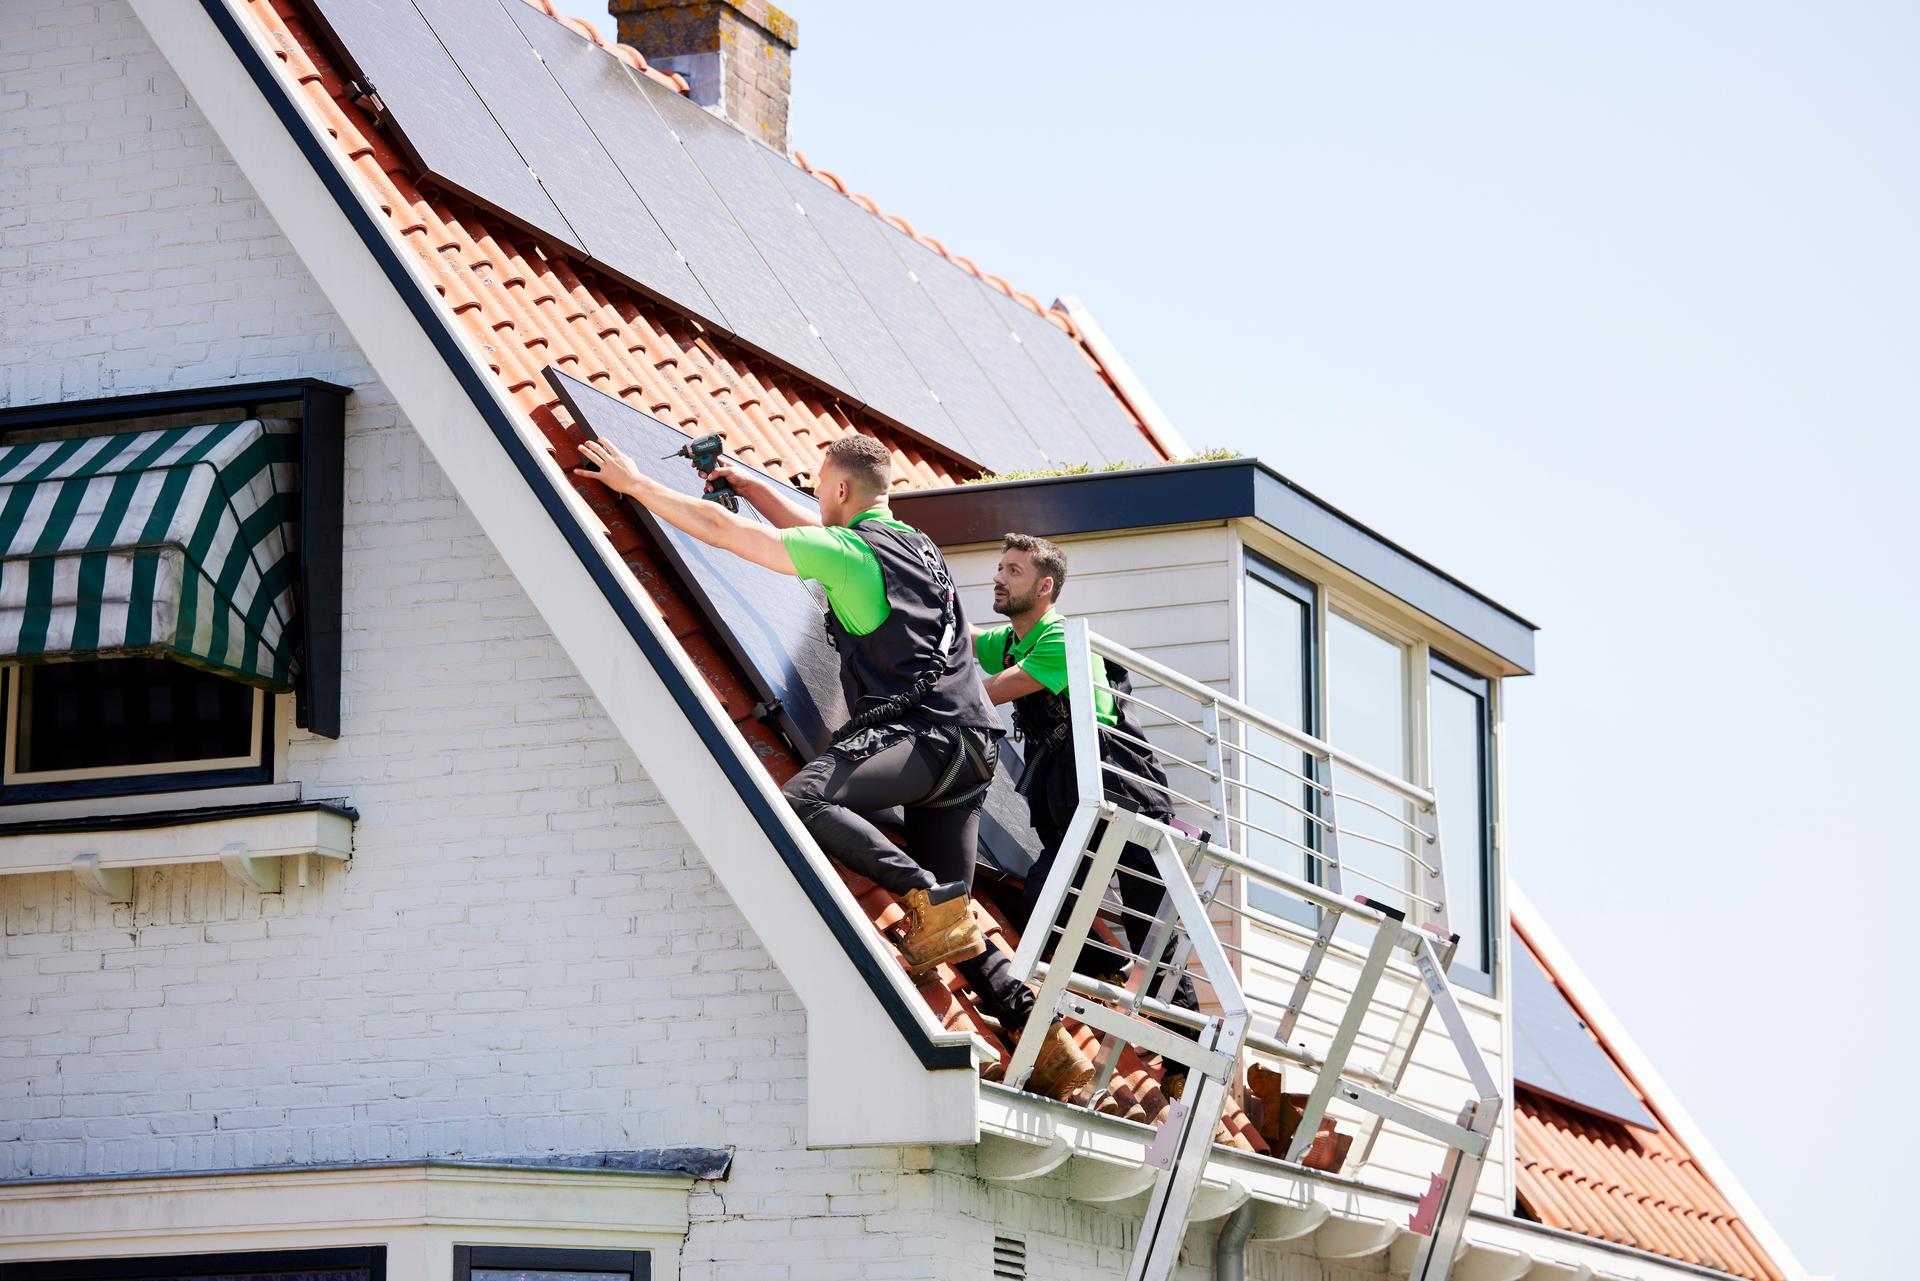 Installateurs van zonnepanelen installeren een zonnepaneel op het dak van een huis